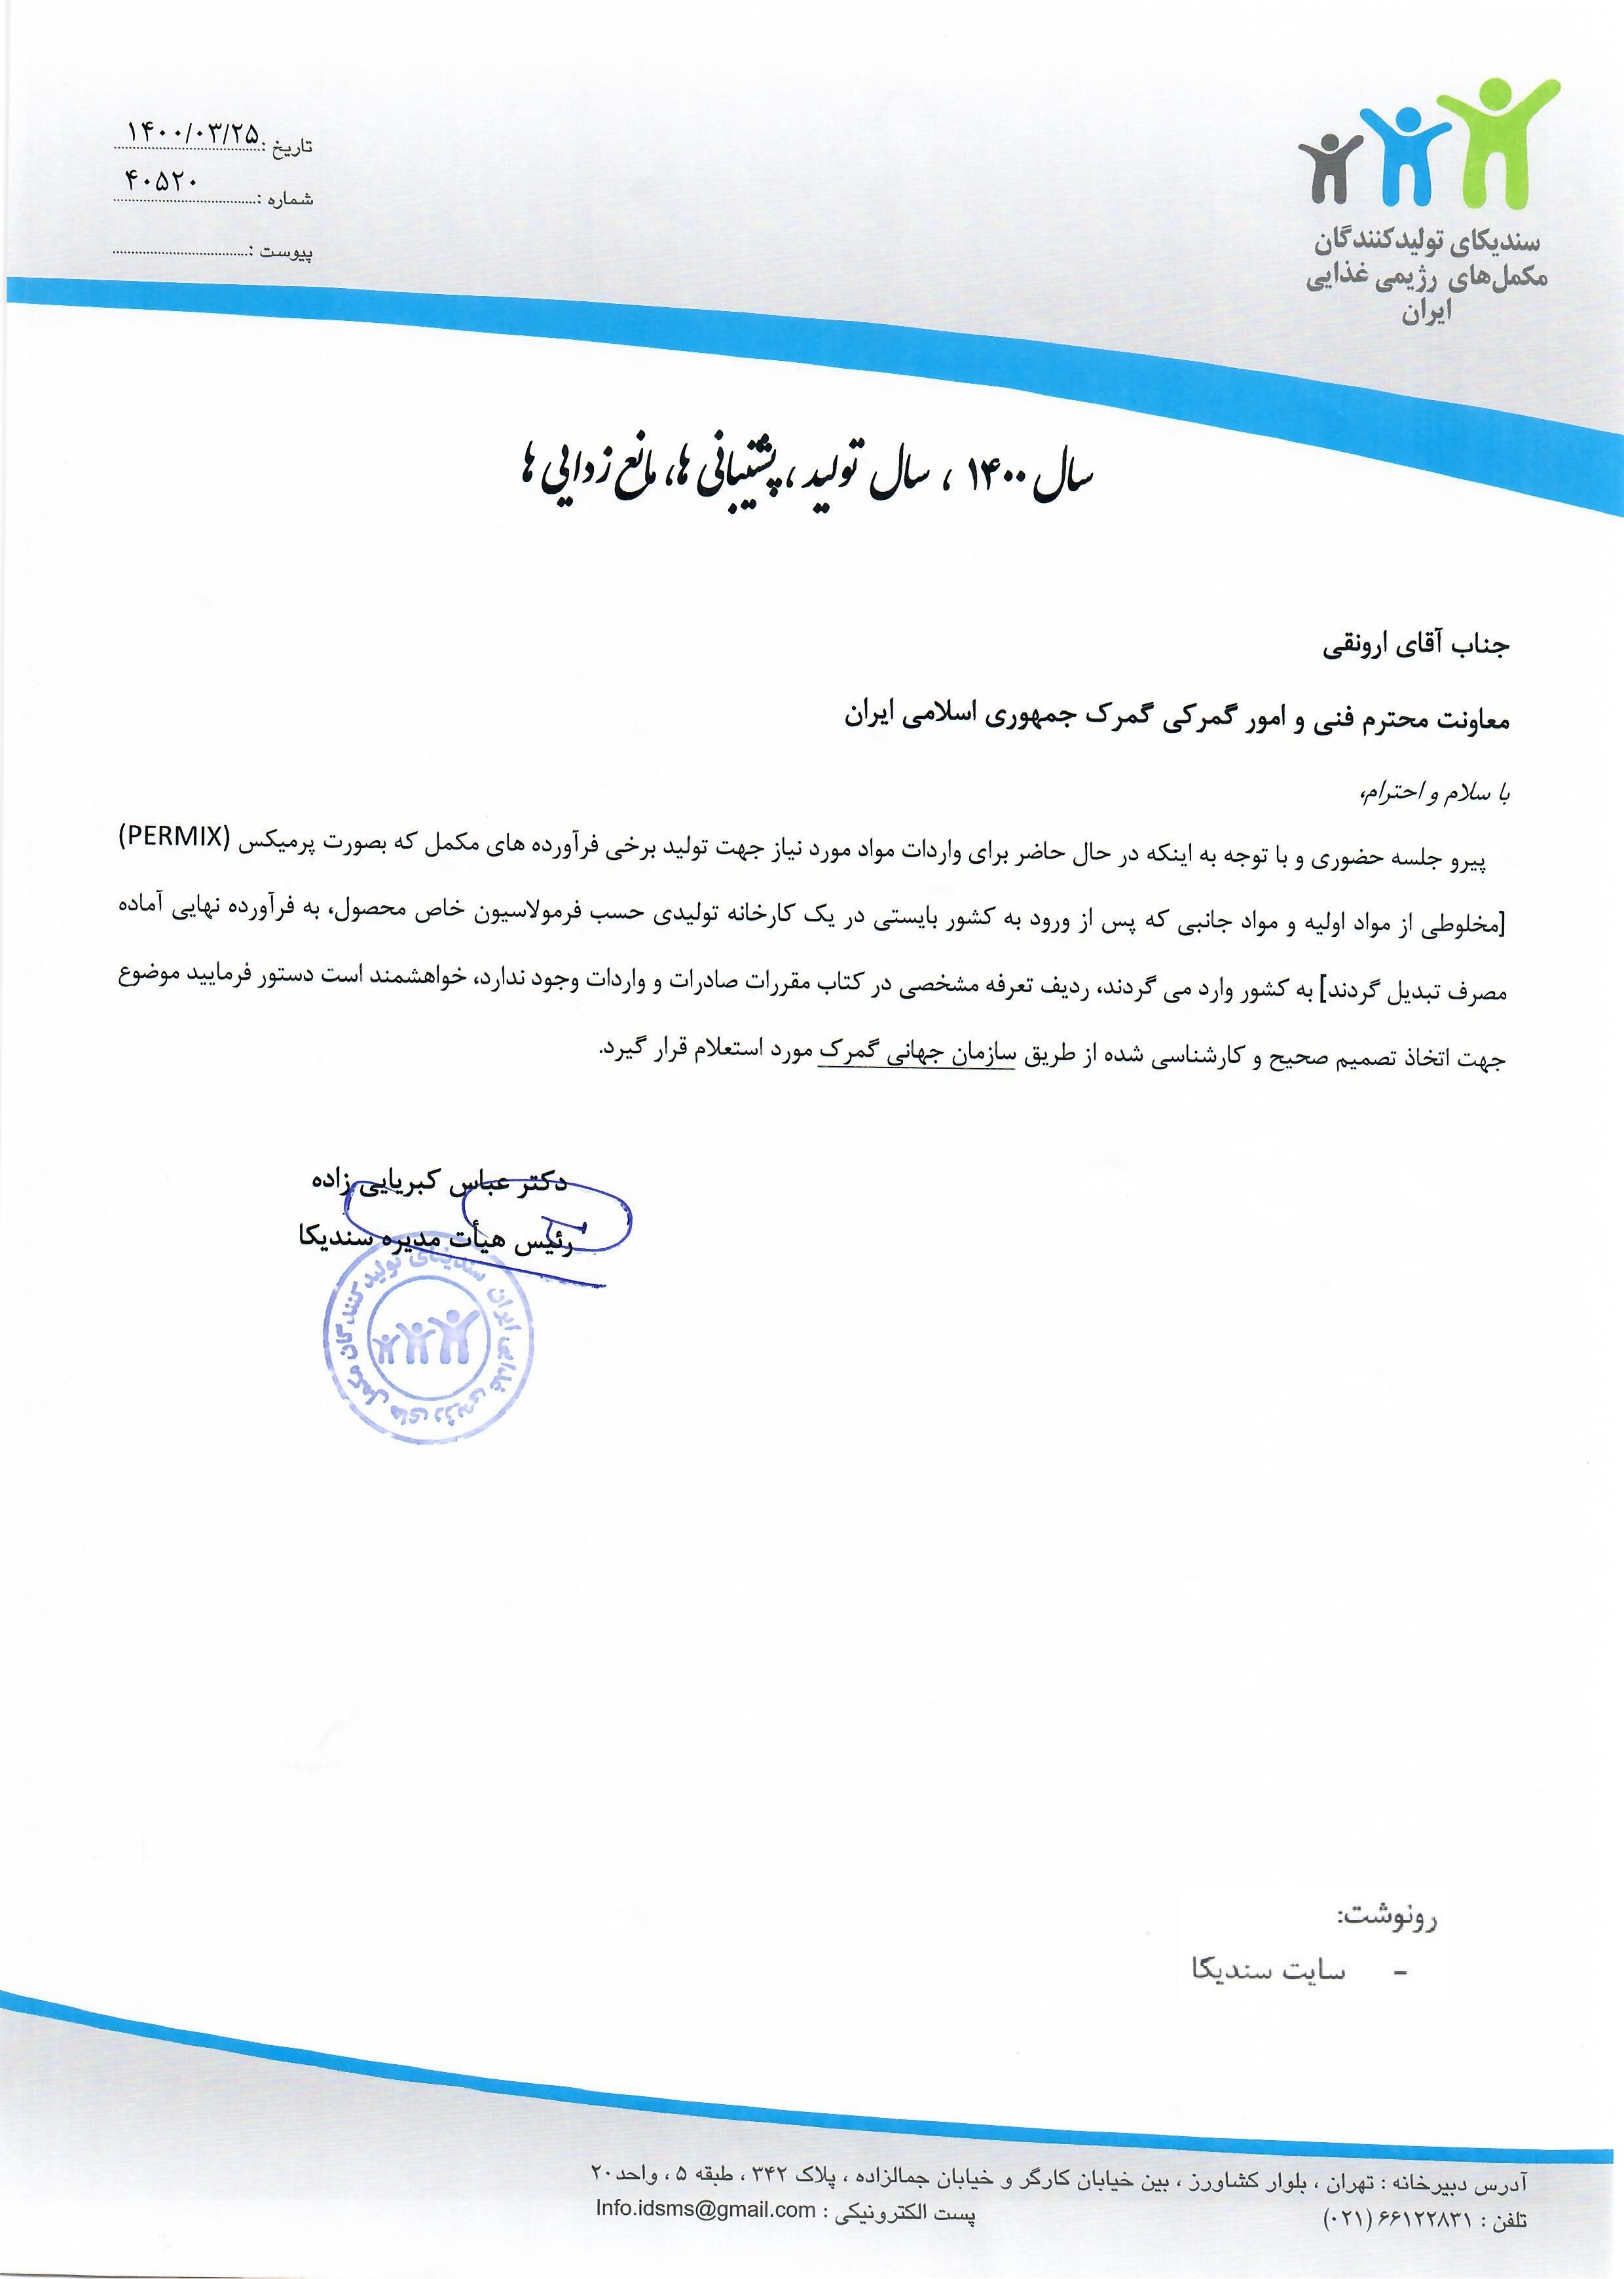 نامه به گمرک جمهوری اسلامی ایران در خصوص واردات مواد اولیه فرآورده هایمکمل بصورت پرمیکس